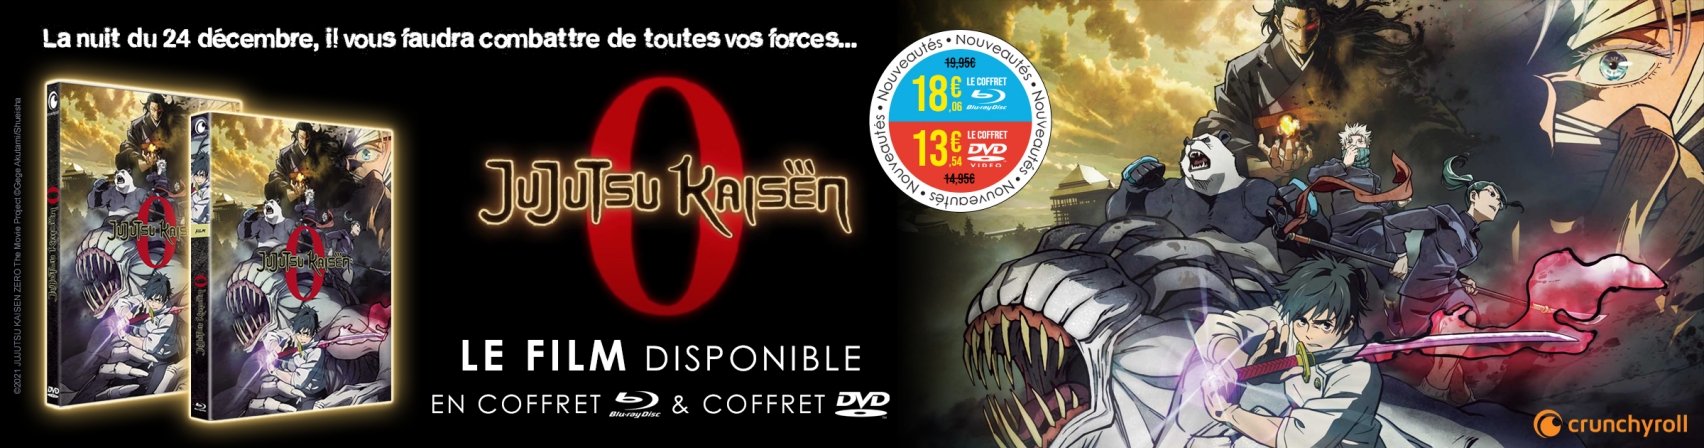 Nouveauté : Jujutsu Kaisen 0 le film en coffret DVD et BR